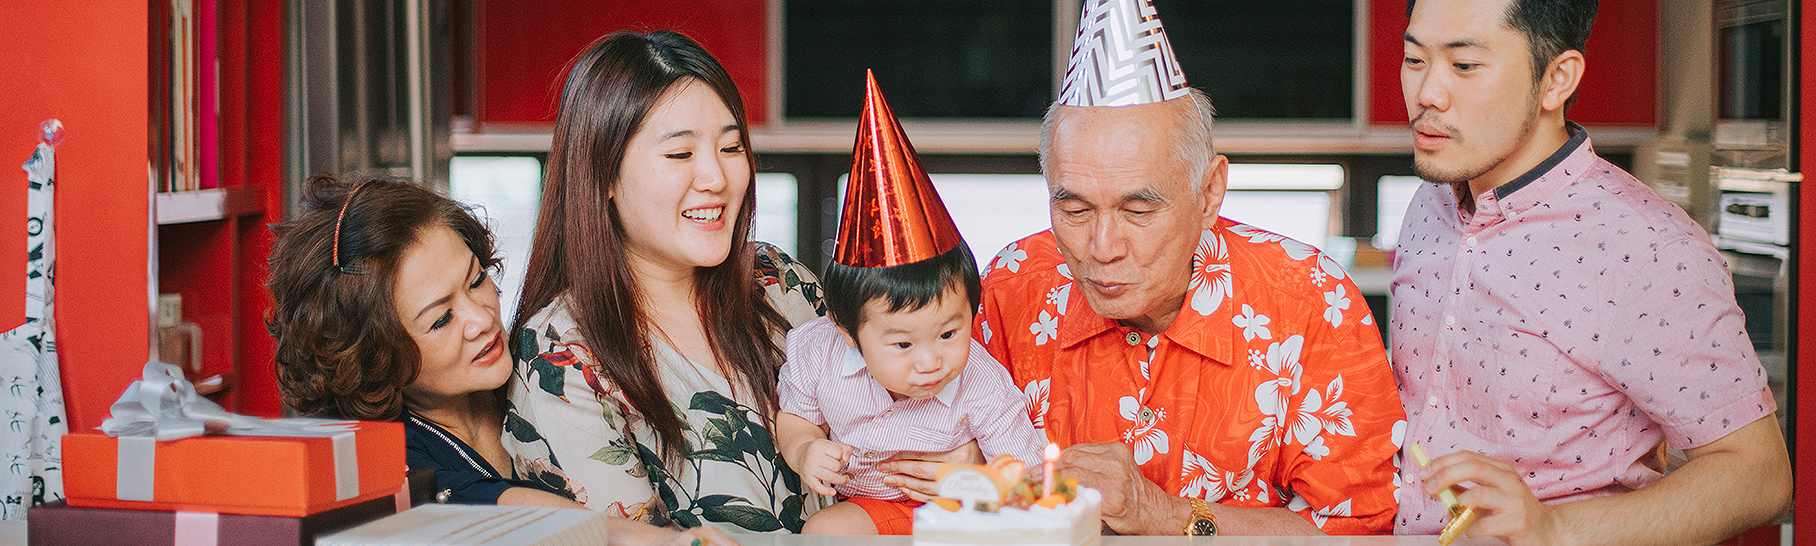 multigenerational family birthday celebration